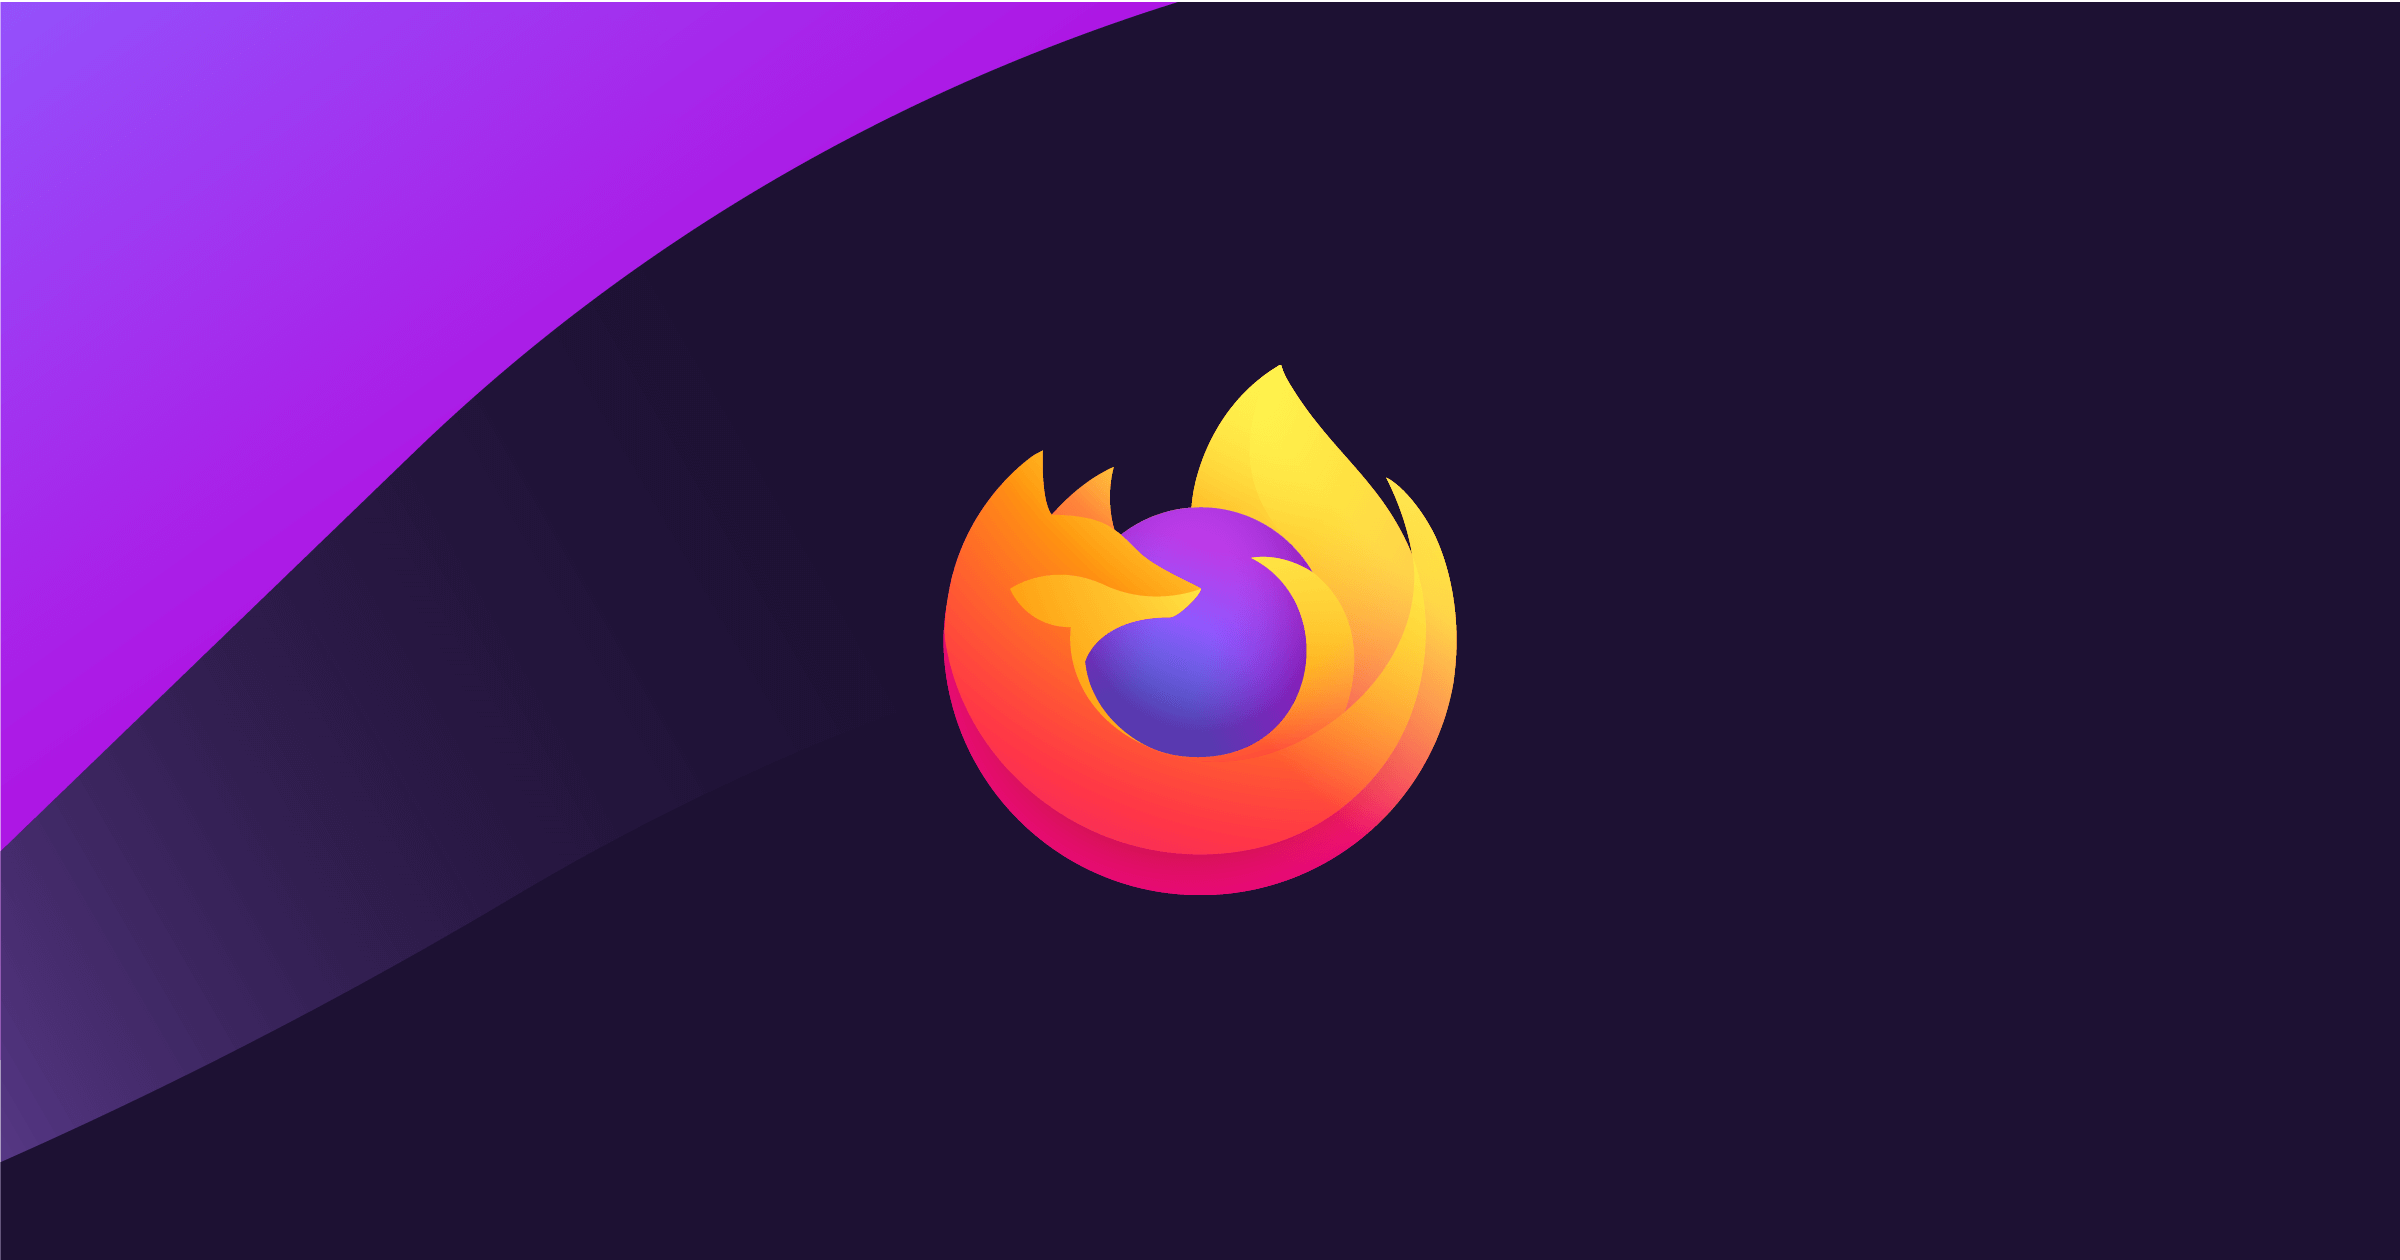 Fire fox là một trong các trình duyệt web phổ biến hiện nay và nó cũng là một trong các trình duyệt web ít tốn tài nguyên nhất (Ảnh: Firefox)